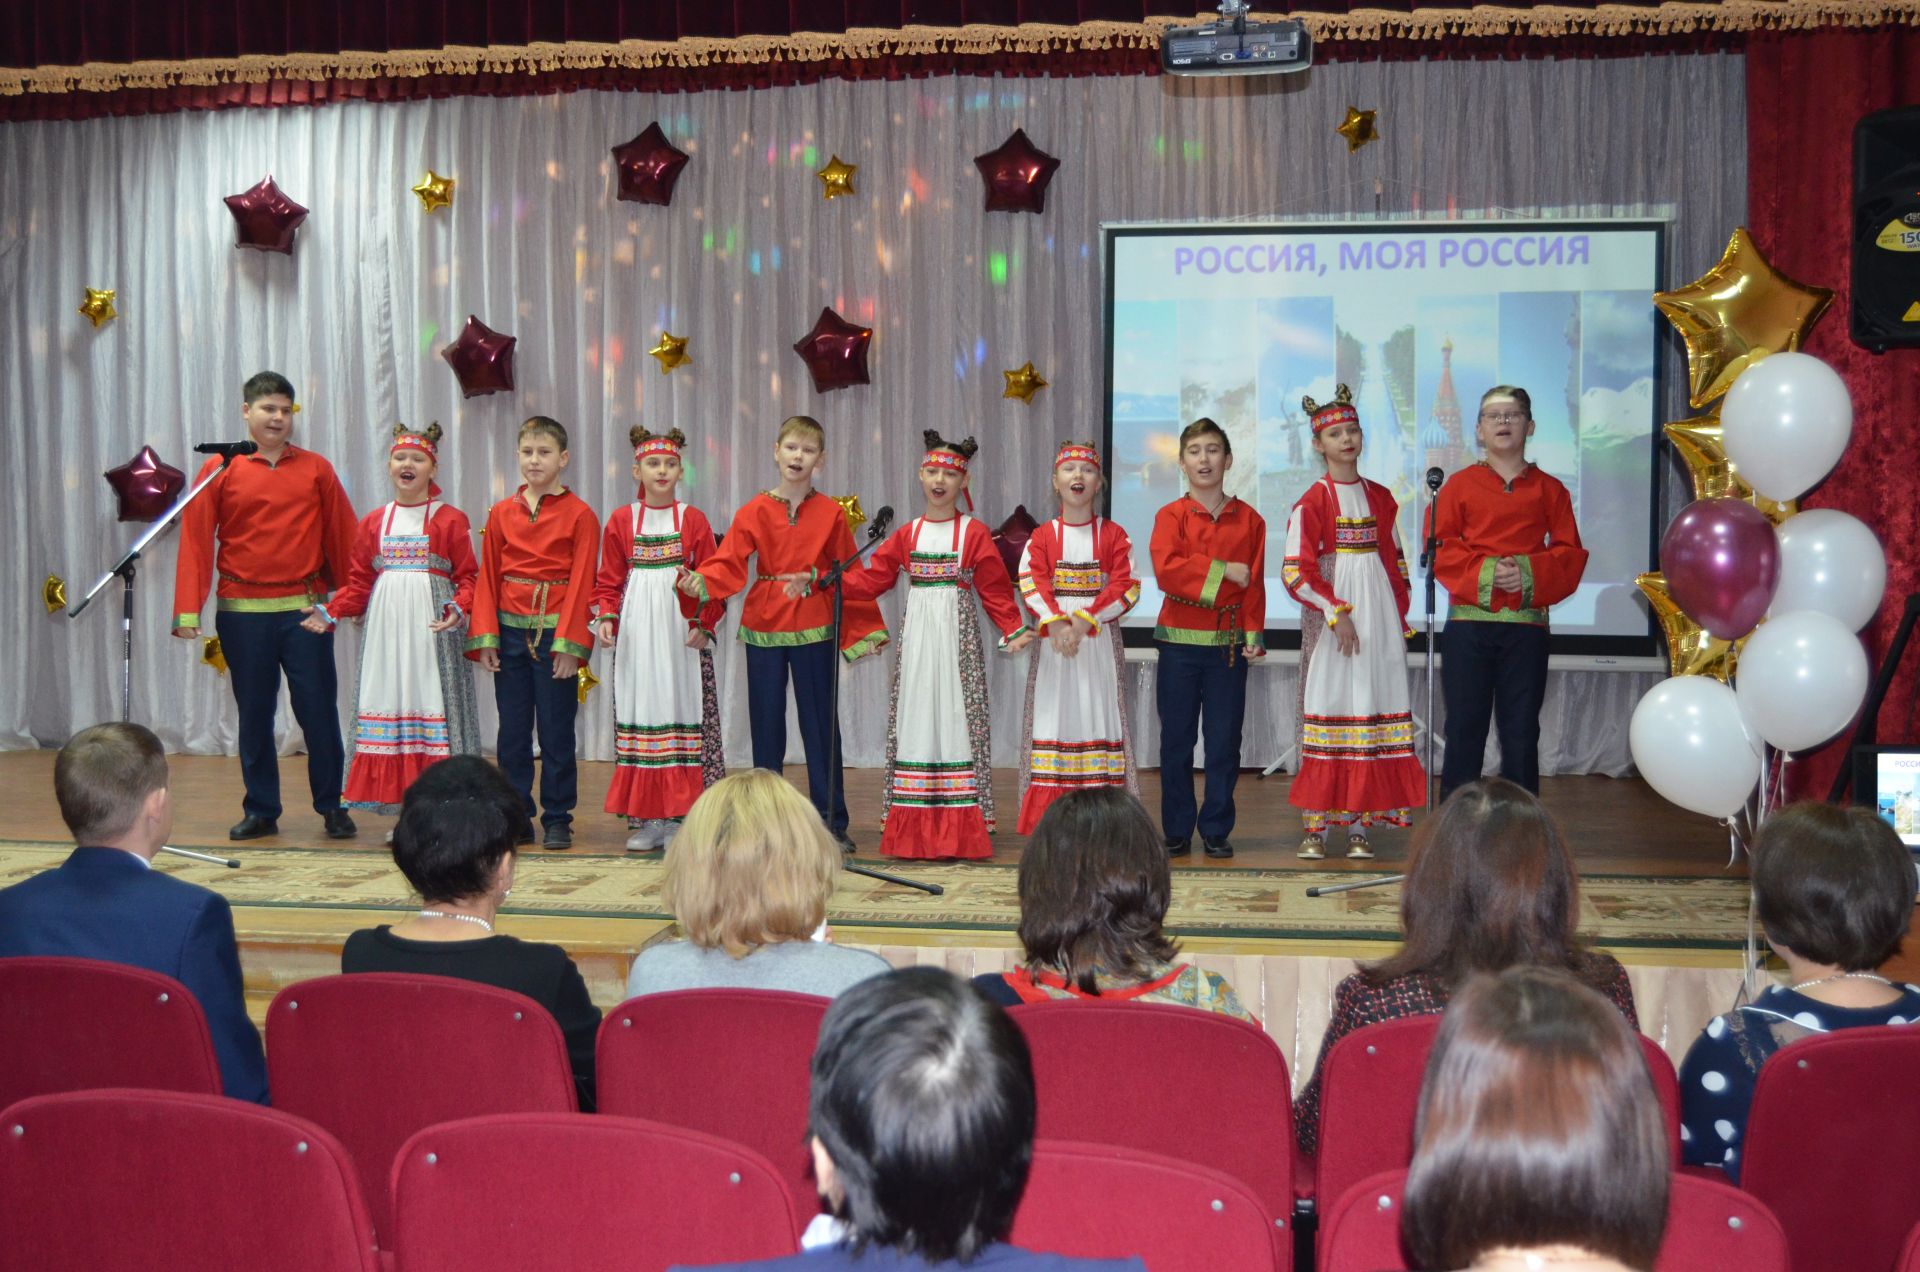 В Болгаре завершился зональный этап конкурса «Учитель года-2020» (ФОТОРЕПОРТАЖ)